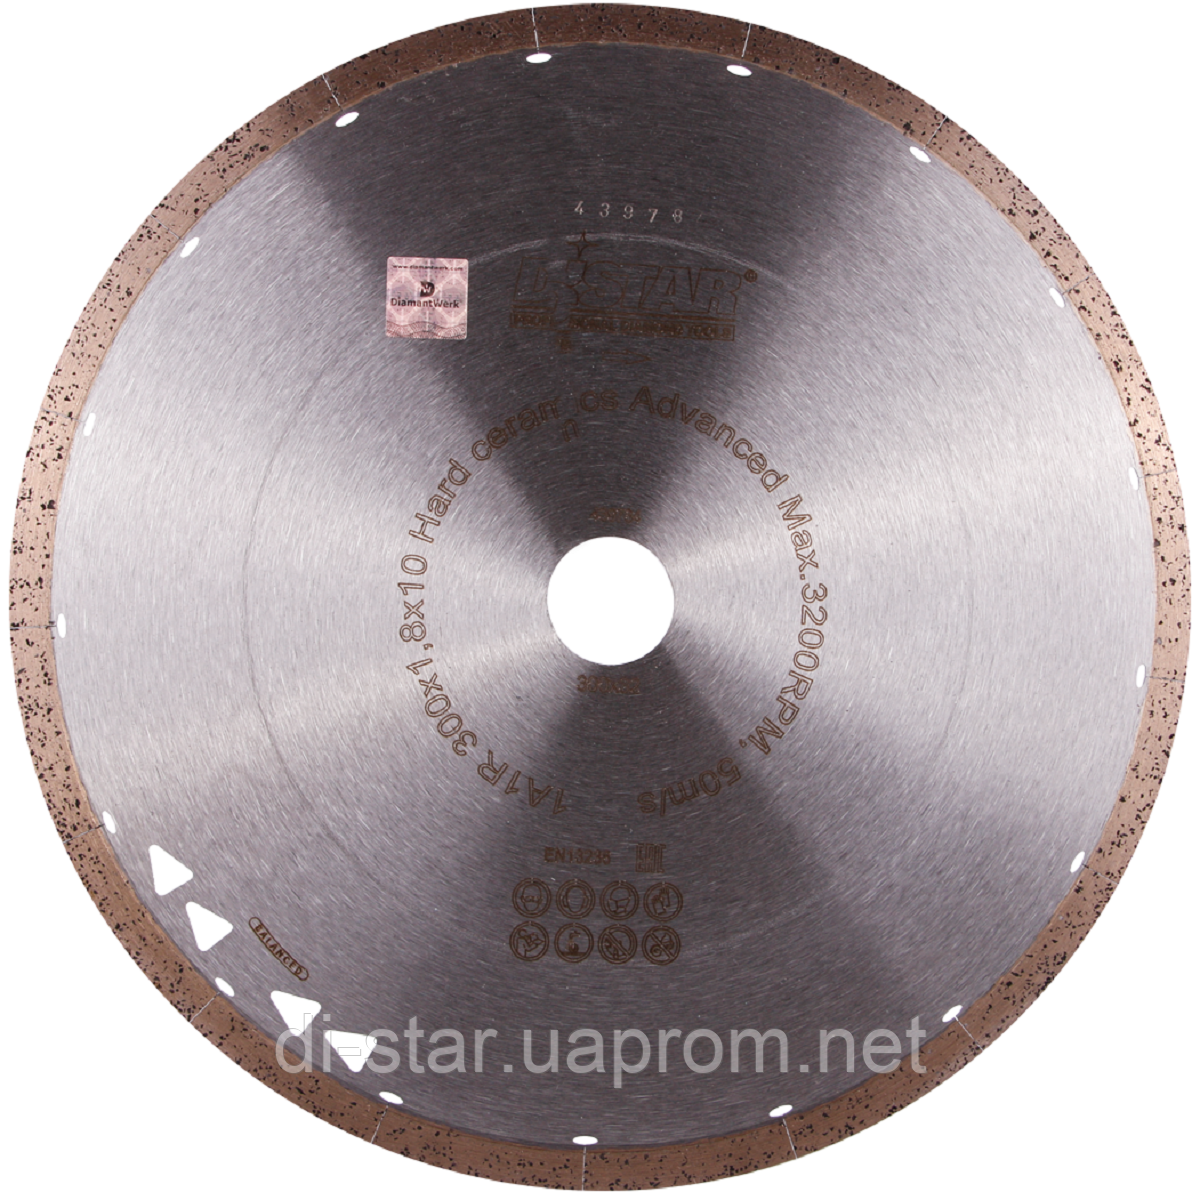 Круг алмазний Distar 1A1R Hard ceramics Advanced 300 мм суцільний диск для чистого різання кераміки (11120528022)